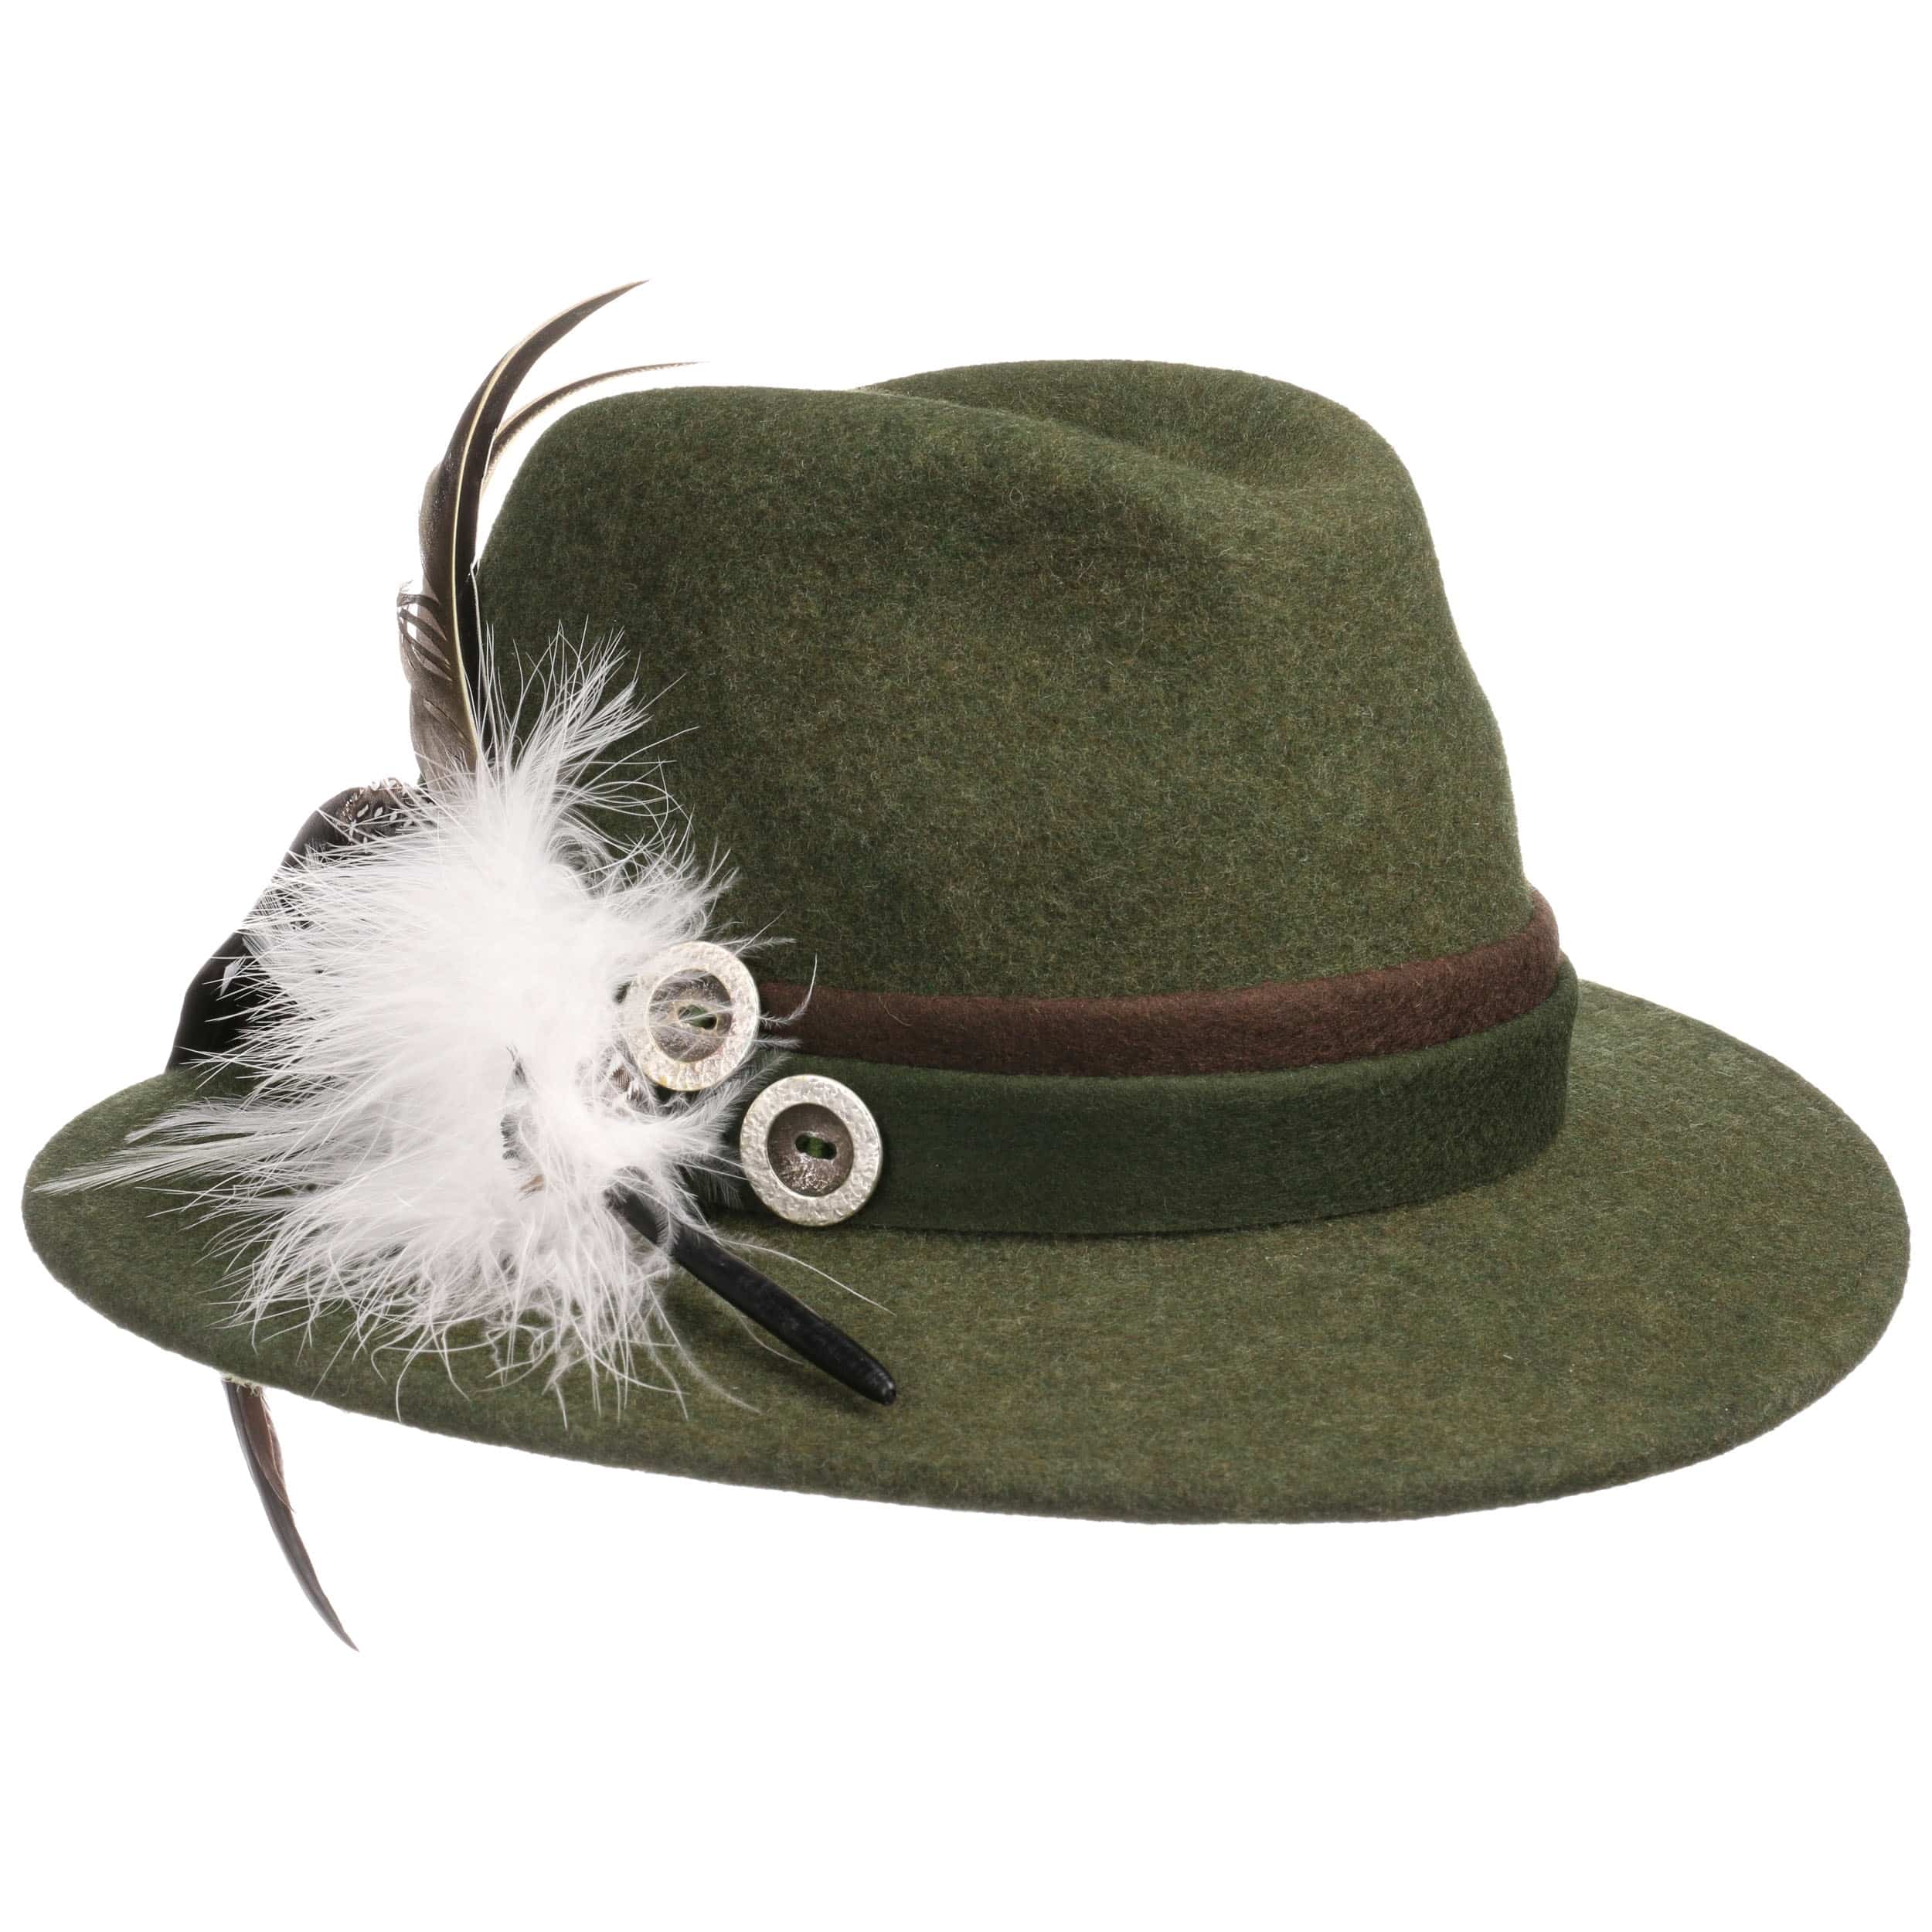 Marietta Tyrolean Hat by Lodenhut Manufaktur - 72,95